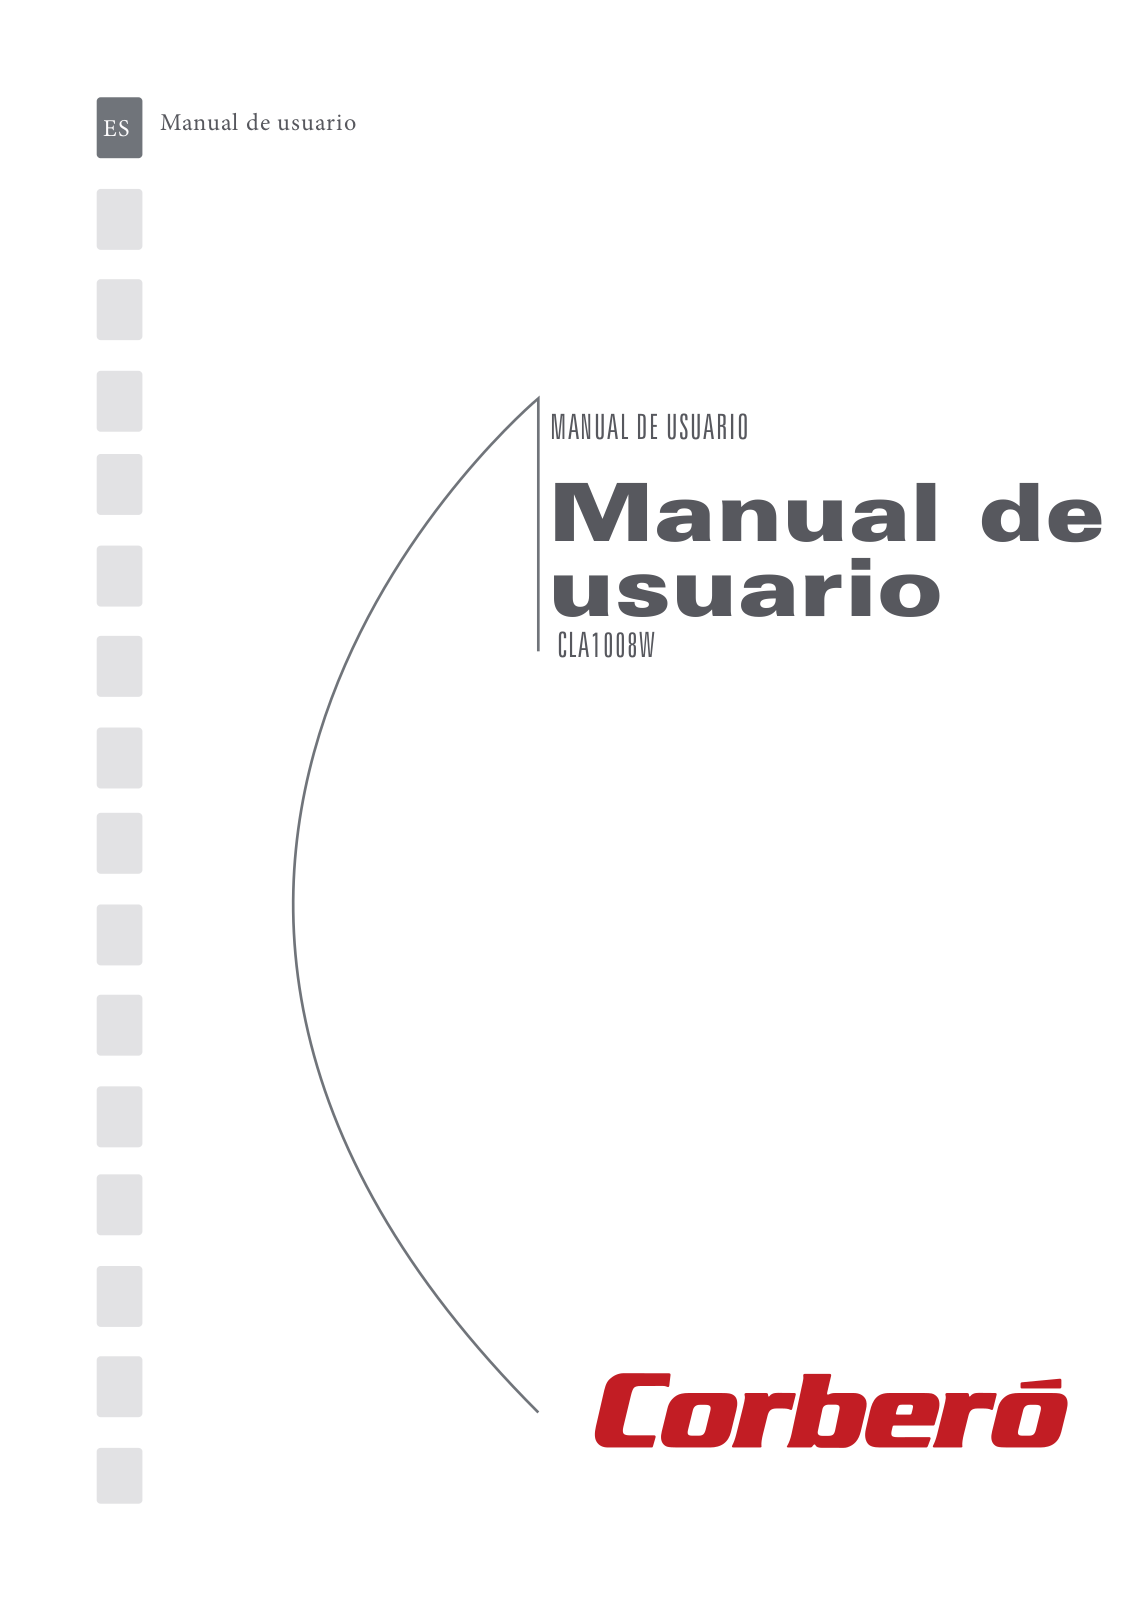 Corberó CLA 1008 W User Manual